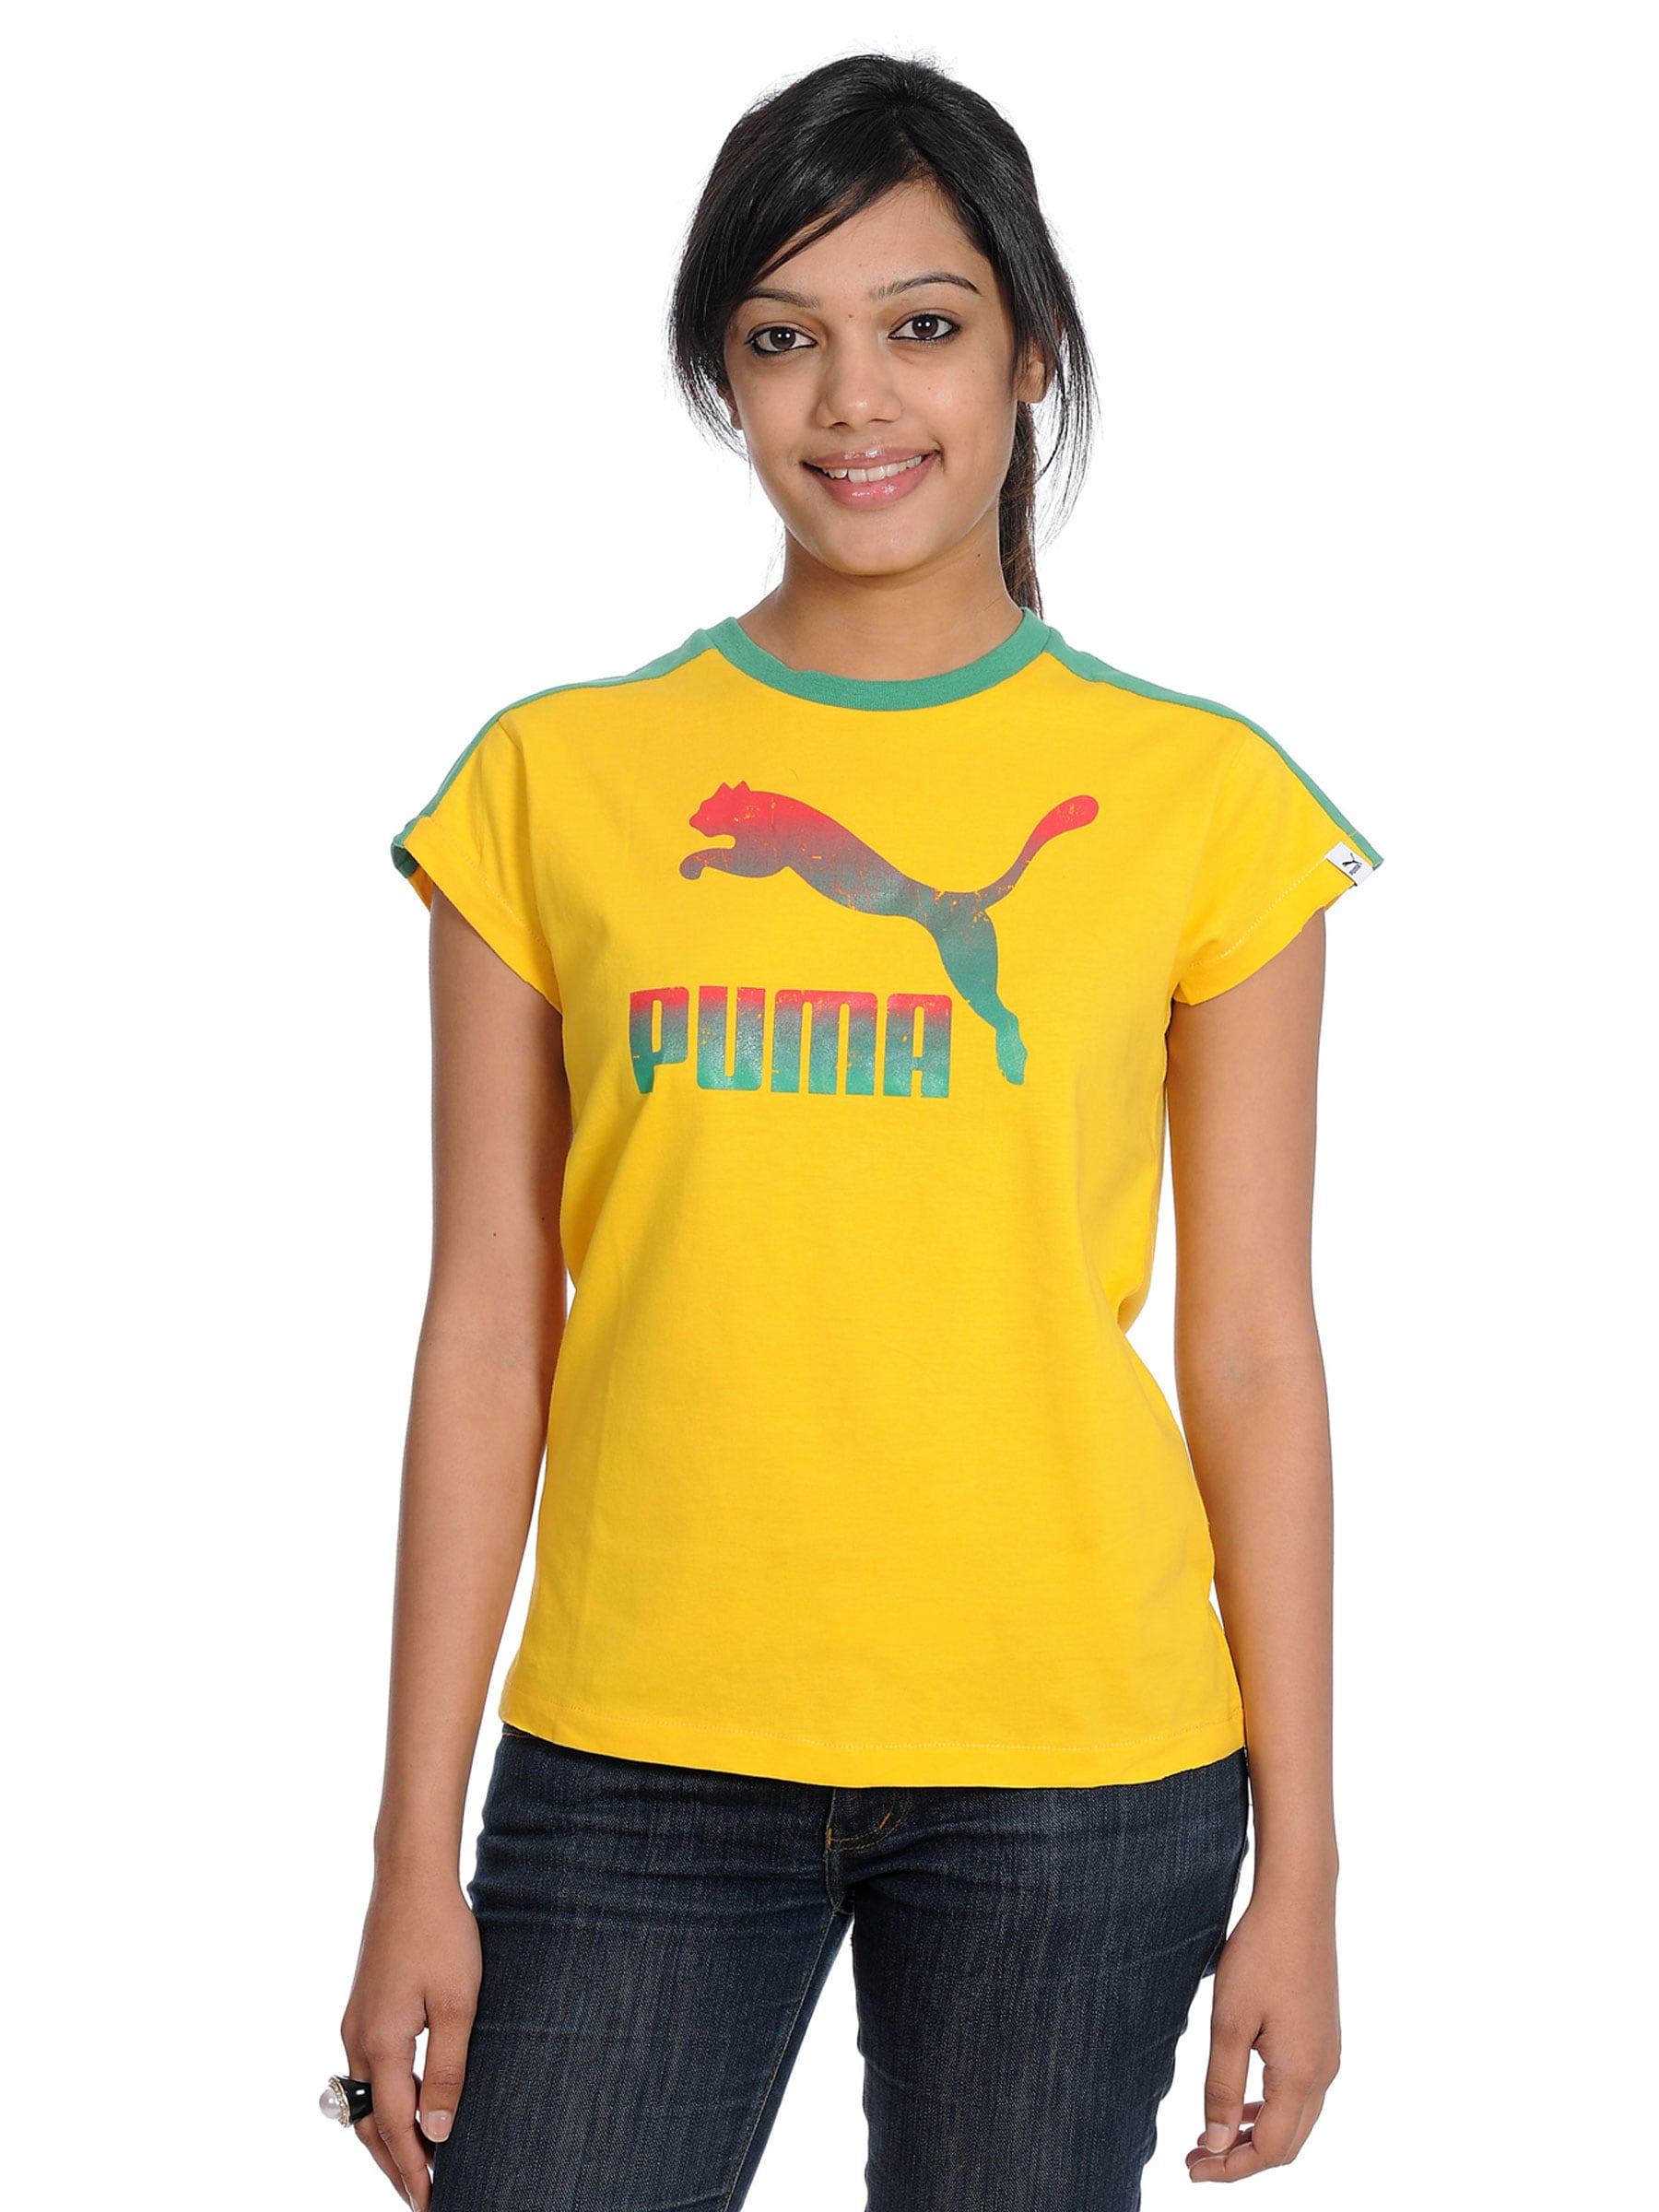 Puma Women's Powergirls T-shirt